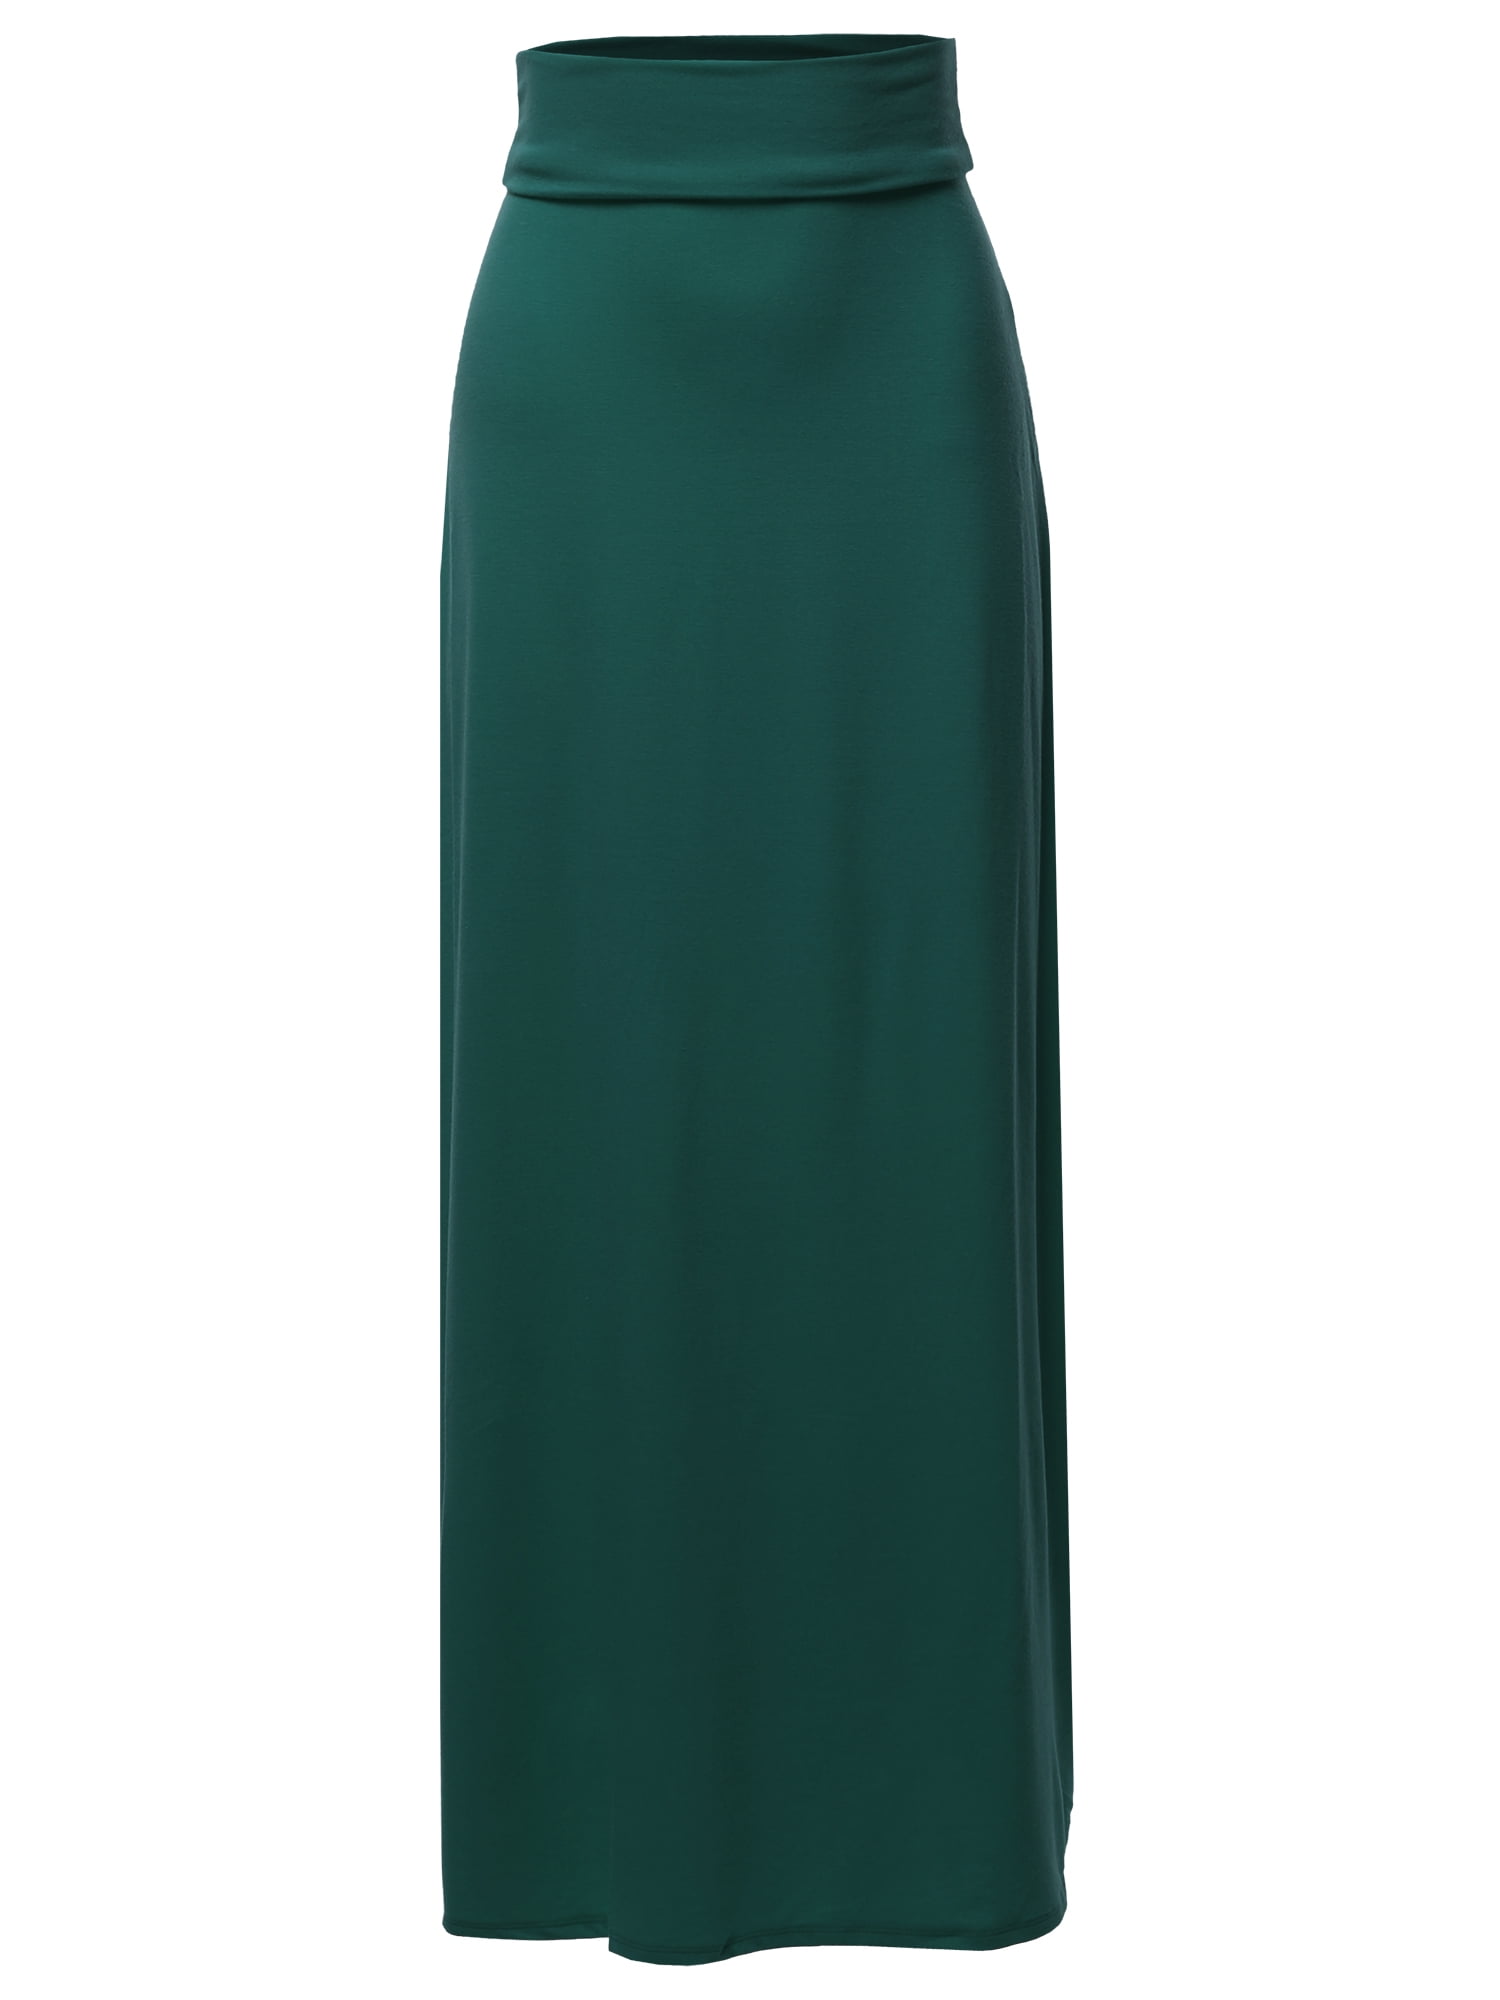 A2Y Women's Basic Foldable High Waist Floor Length Maxi Skirts ...